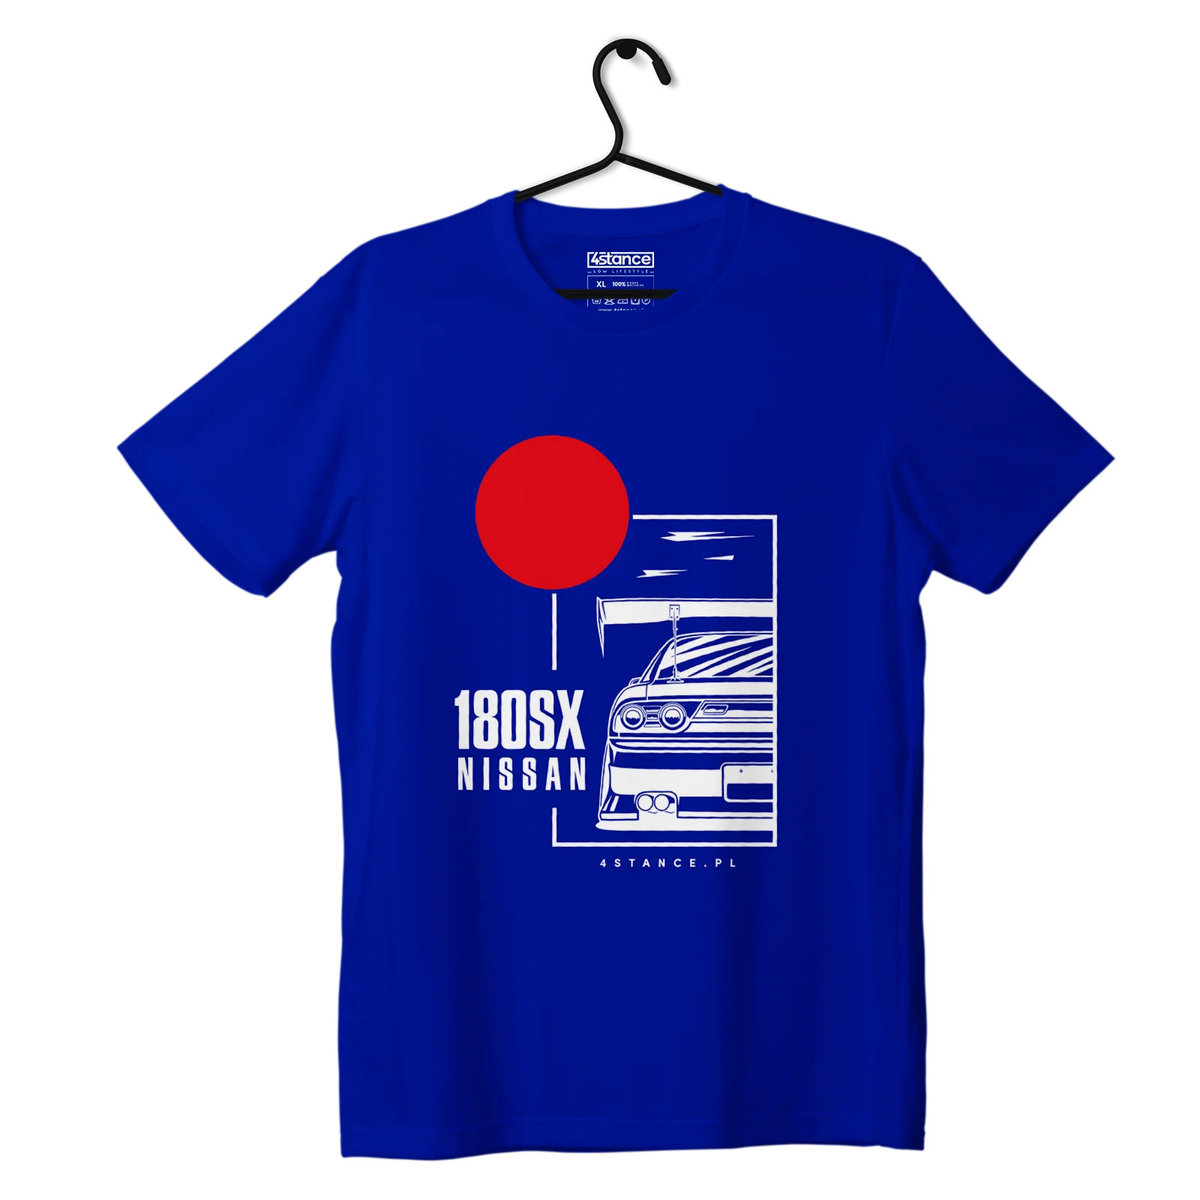 Zdjęcia - Odzież motocyklowa Nissan T-shirt koszulka  180SX niebieska-M 